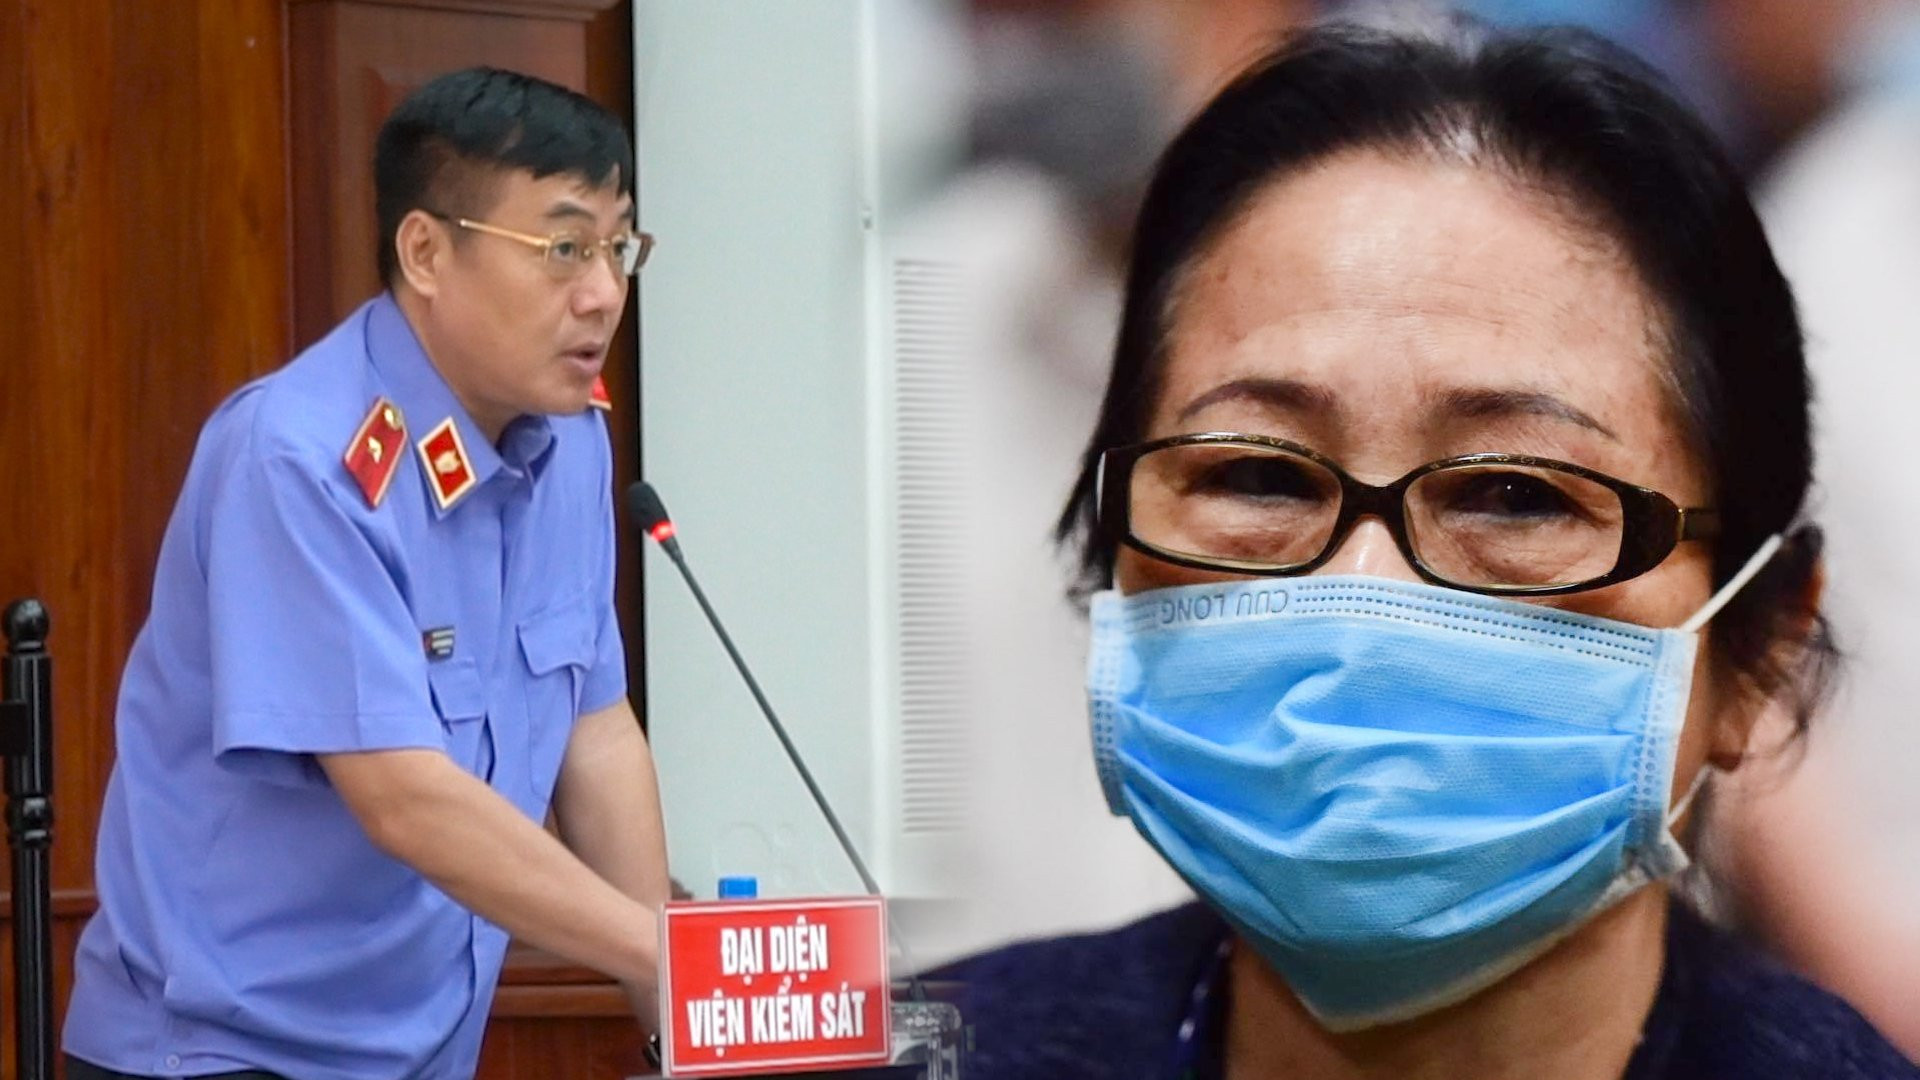 VKS đề nghị bác kháng cáo của ông Nguyễn Thành Tài, bà Dương Thị Bạch Diệp